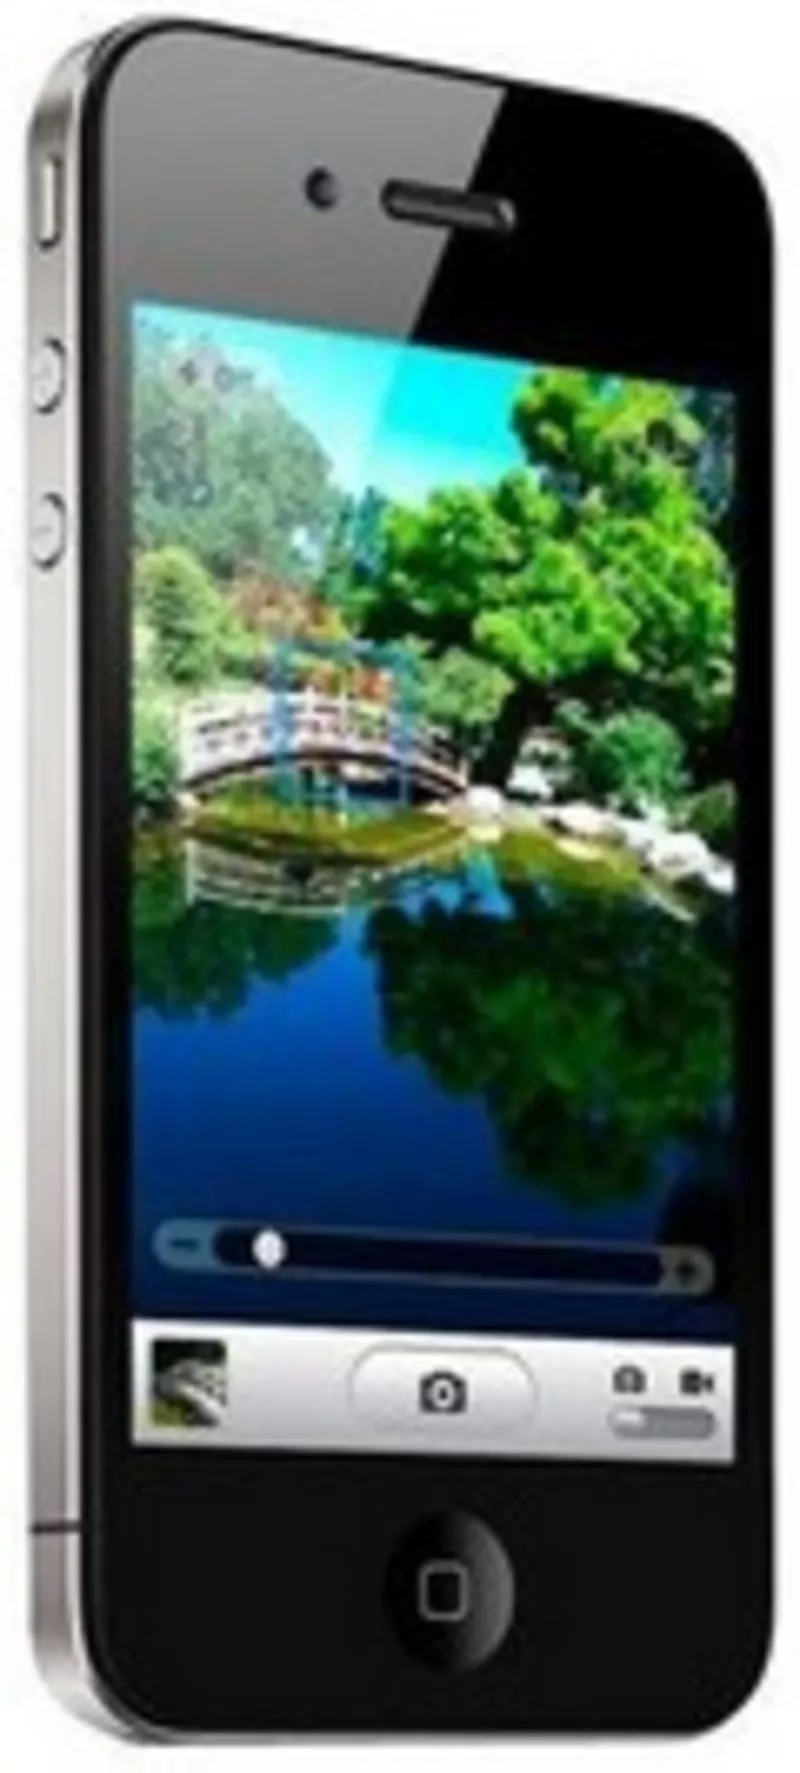 Купить Смартфон iPhone 4GS в Казахстане Алматы.